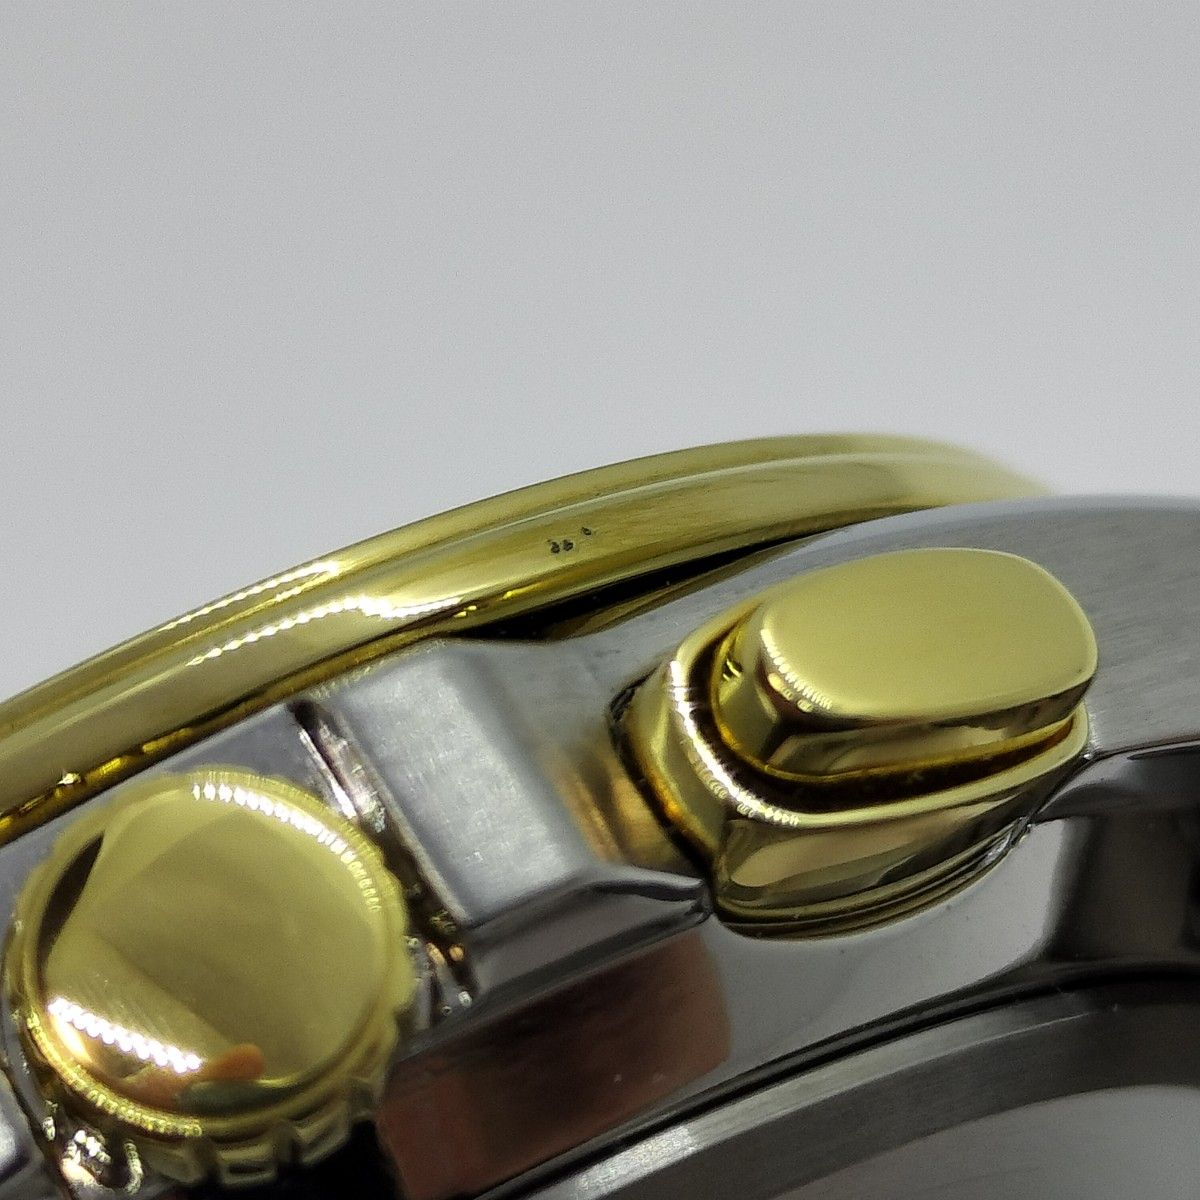 【美品】CITIZENシチズン E660-S122244 エコドライブメンズ腕時計